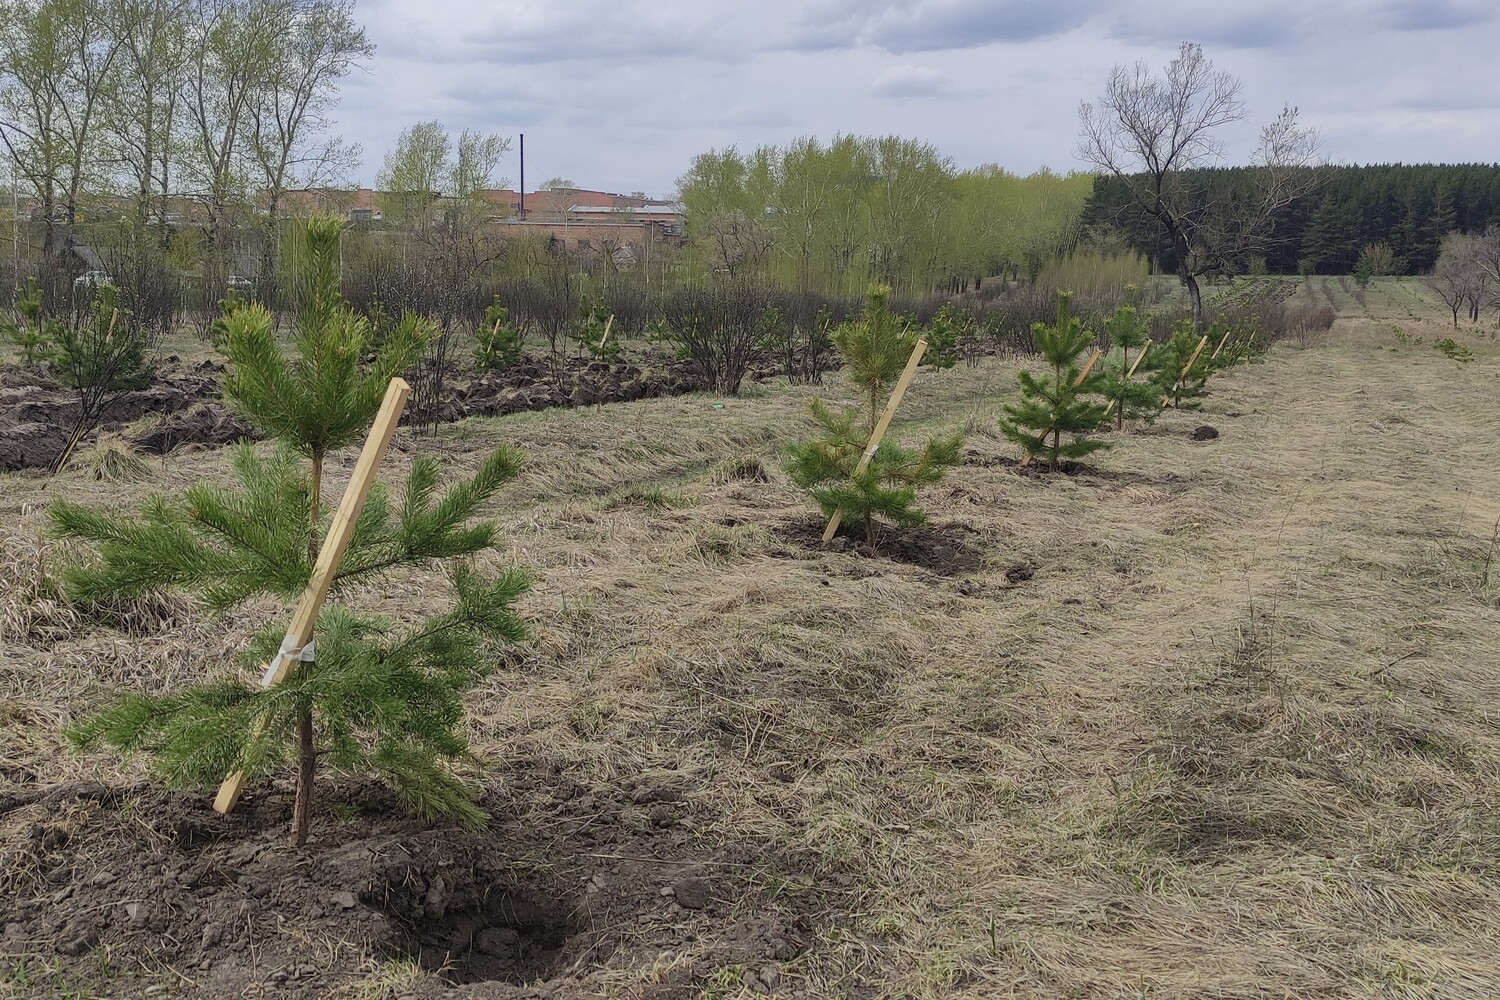 4640 сосновых саженцев высадил экодесант Шахты №12 в поселке Северный Маганак. Стройсервис